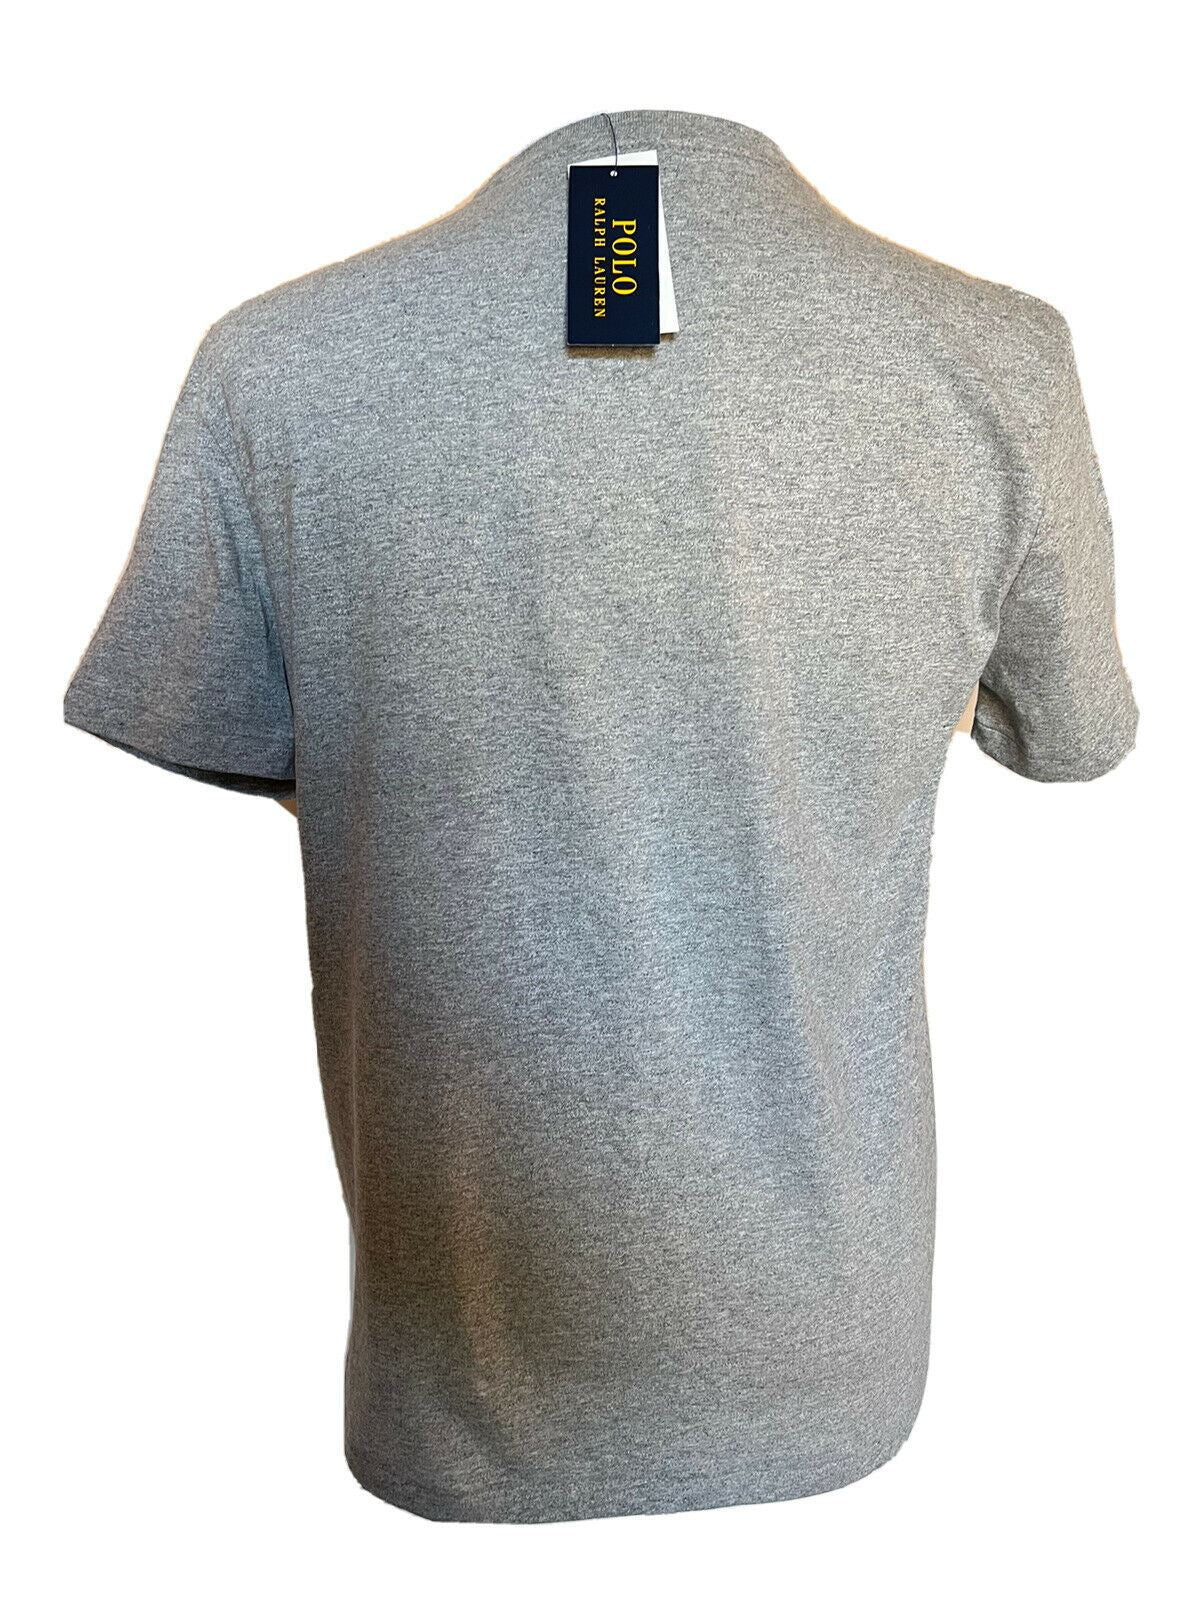 Neu mit Etikett: 59,50 Polo Ralph Lauren Bear T-Shirt Grau XL